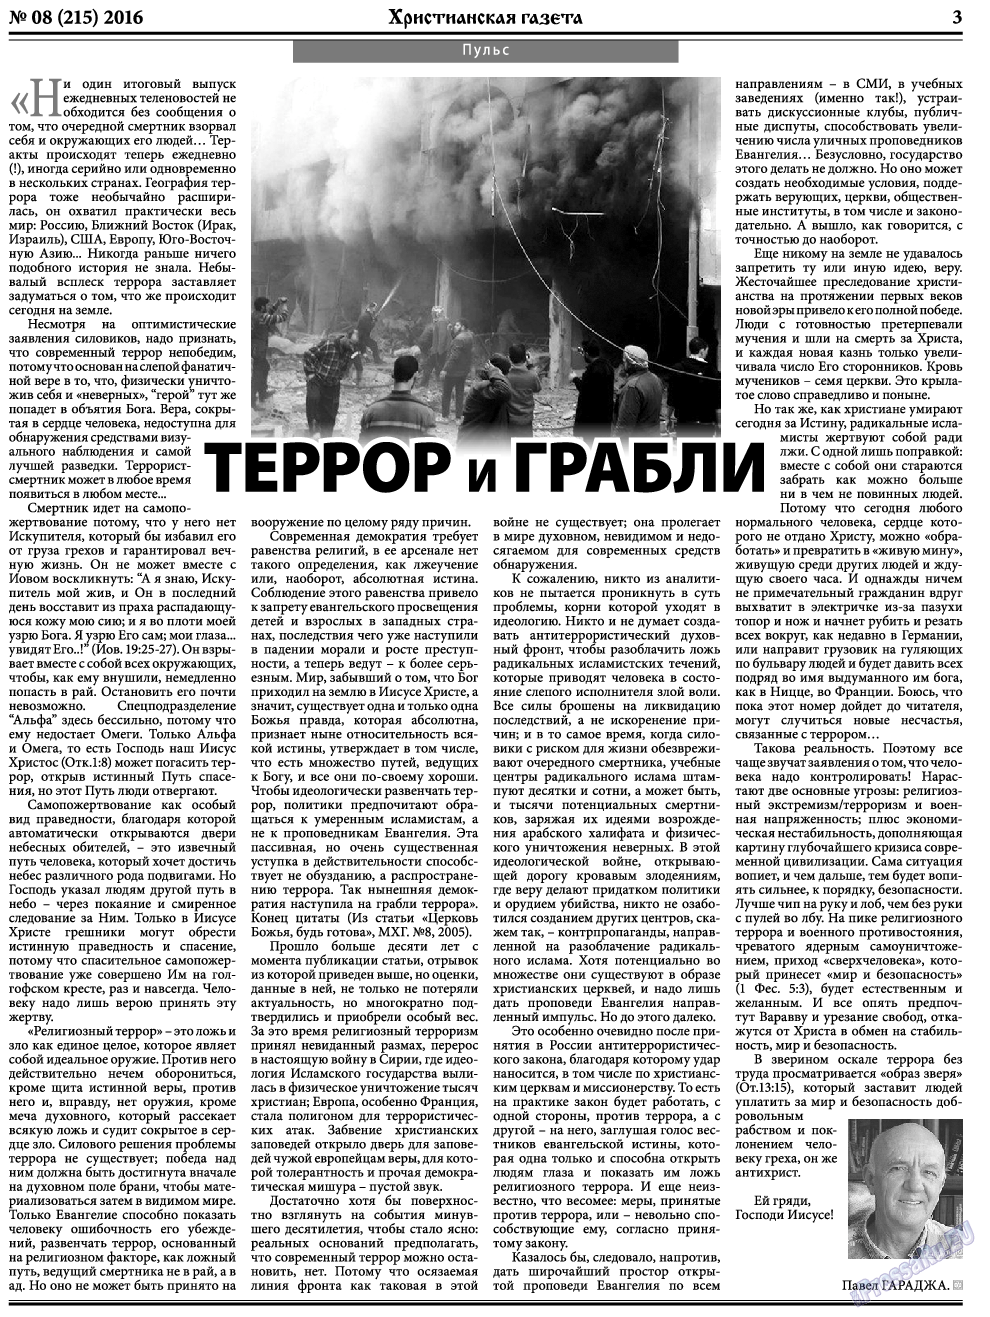 Христианская газета, газета. 2016 №8 стр.3